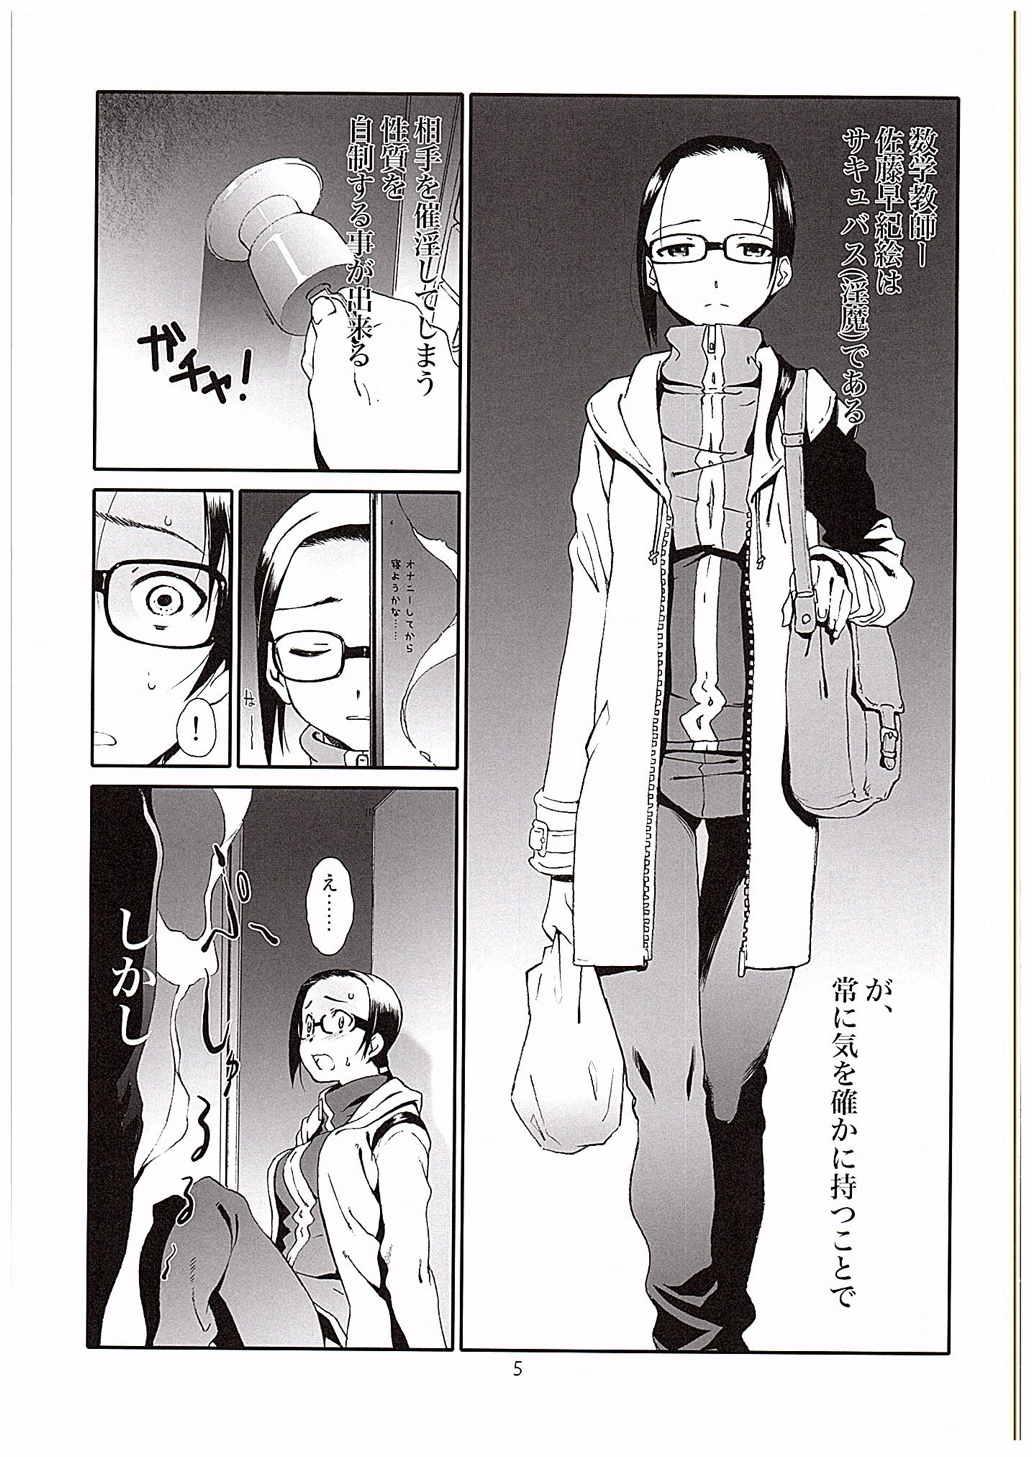 Gostoso Succubus-san wa Majiritai - Demi-chan wa kataritai Ecchi - Page 4